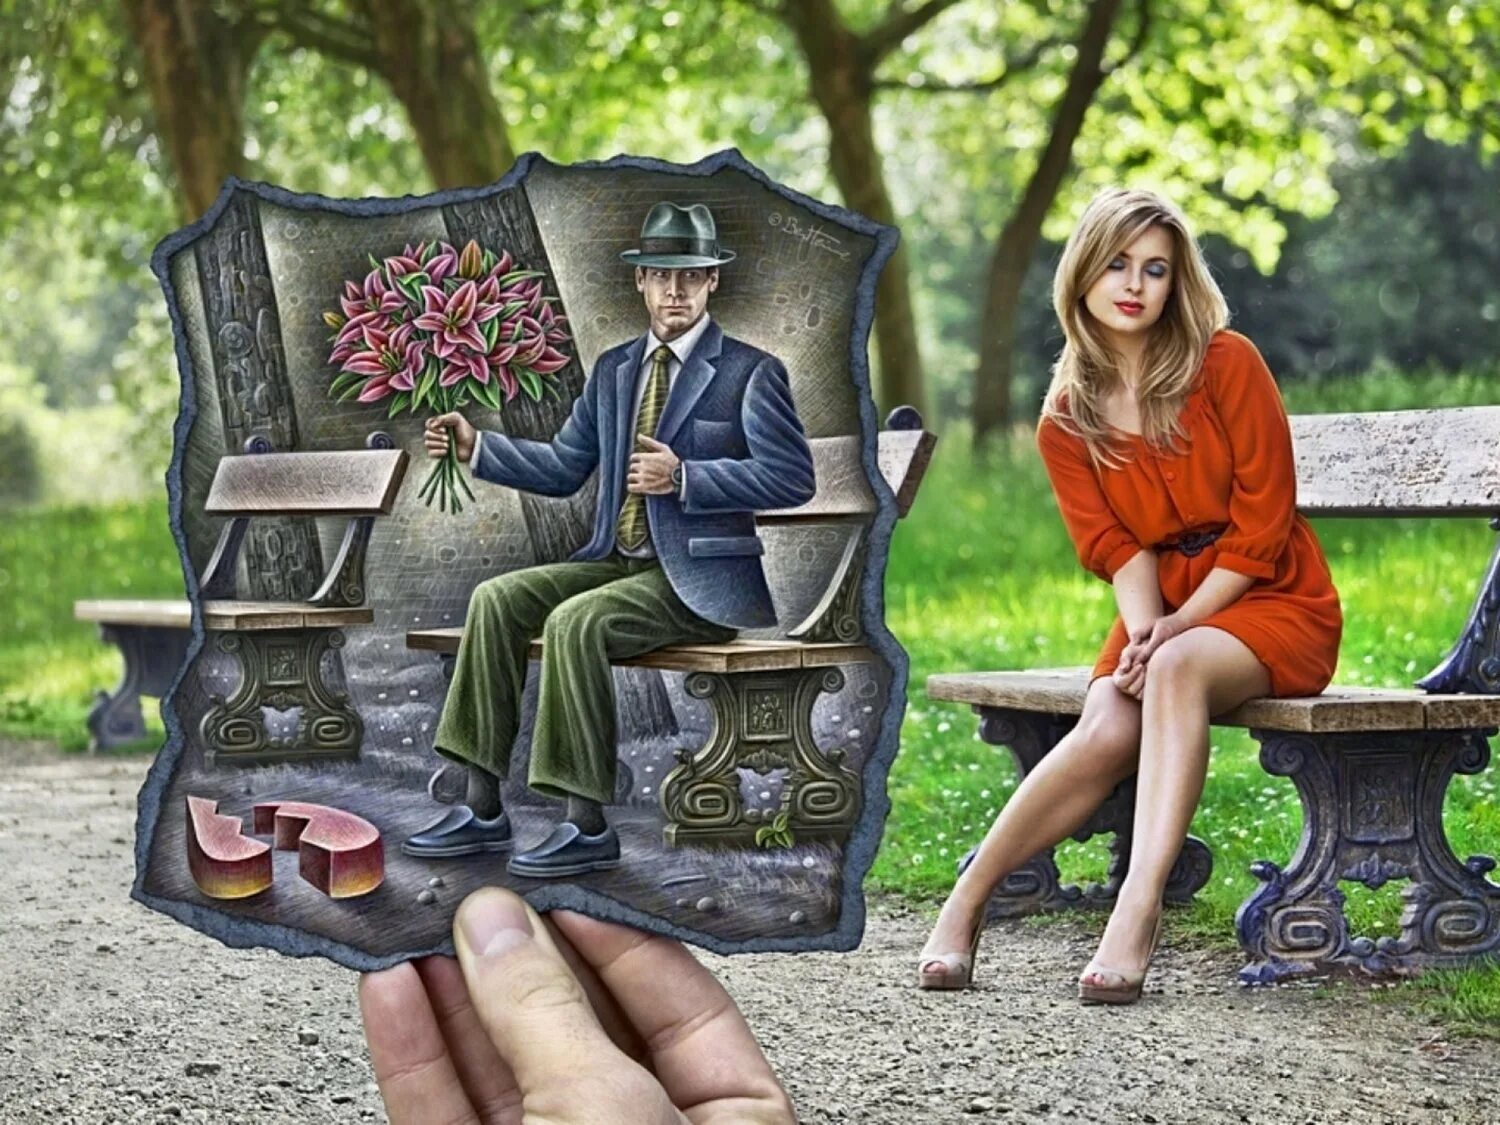 Красоту сидели люди. Художник Бен Хайне. Ben Heine художник. Бельгийский художник Бен Гейне. Девушка на скамейке в парке.